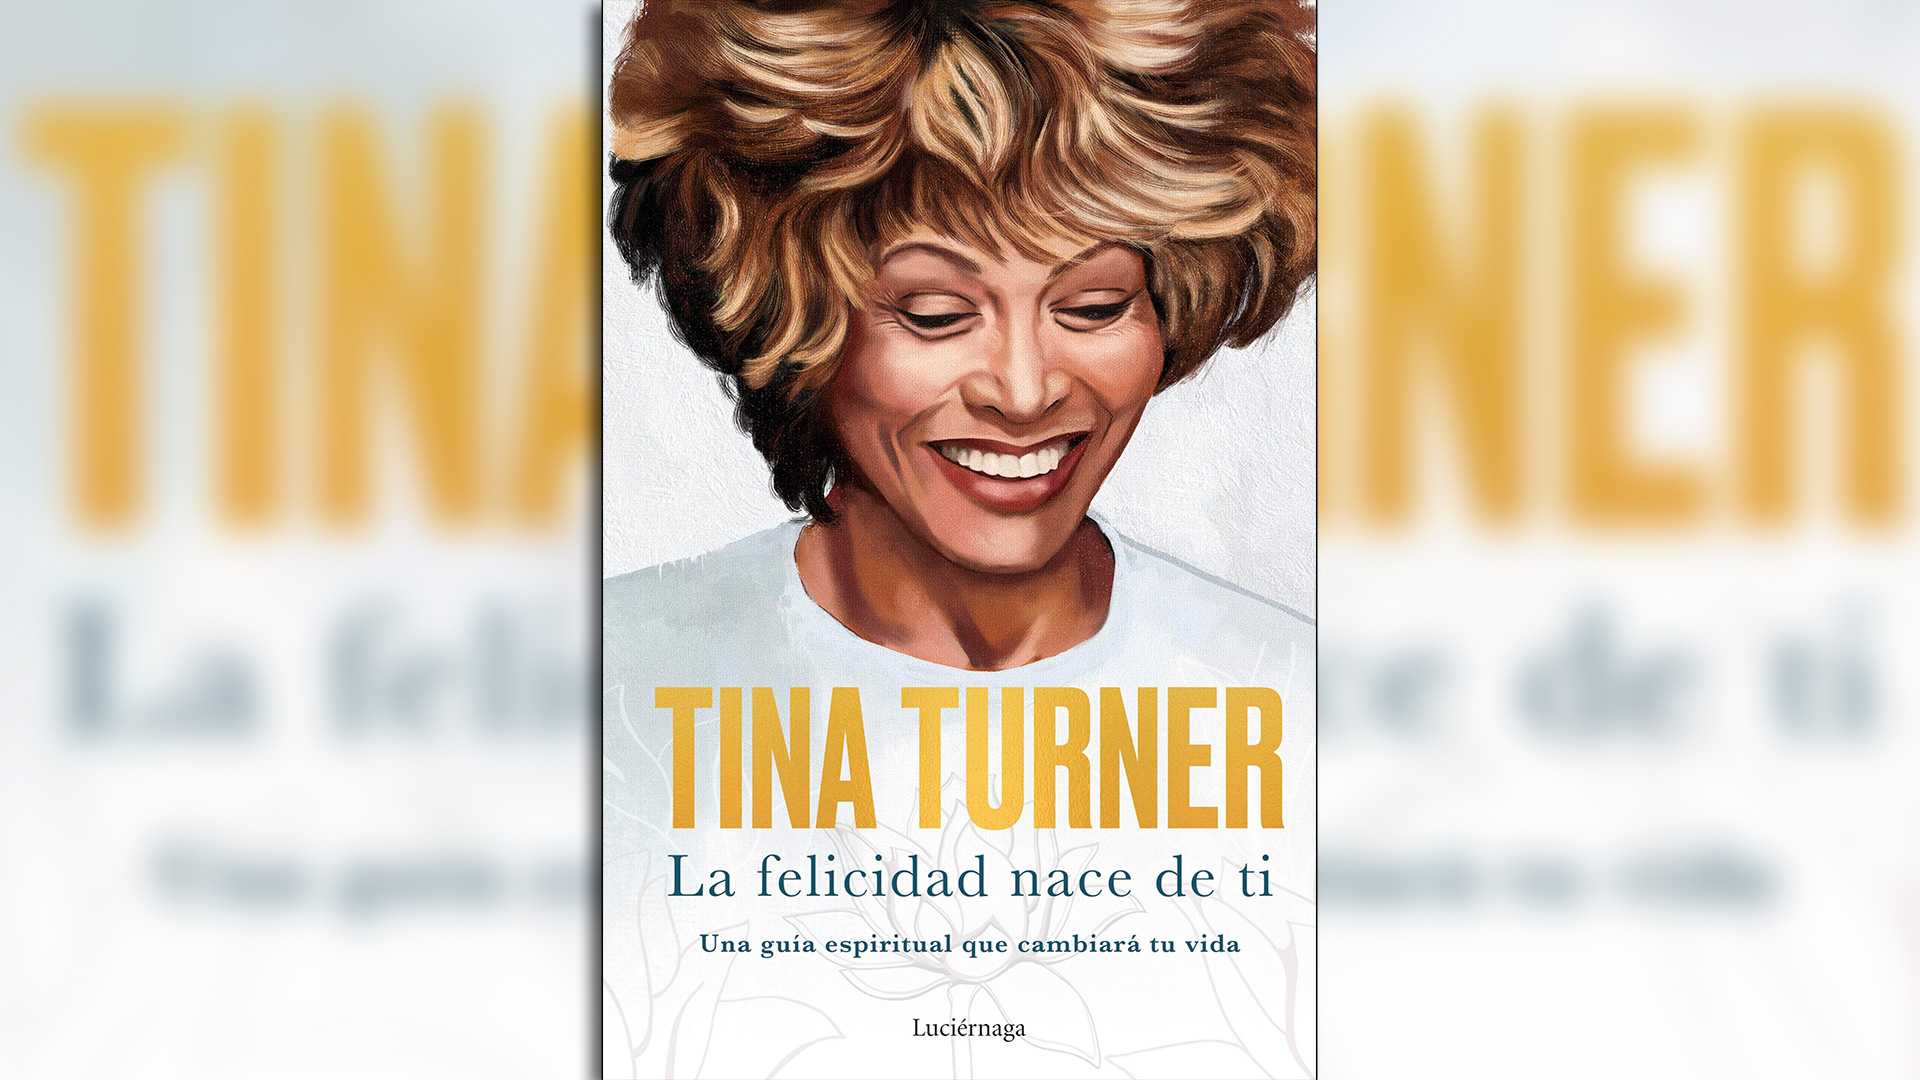 "La felicidad nace de tí", la experiencia de Tina Turner.